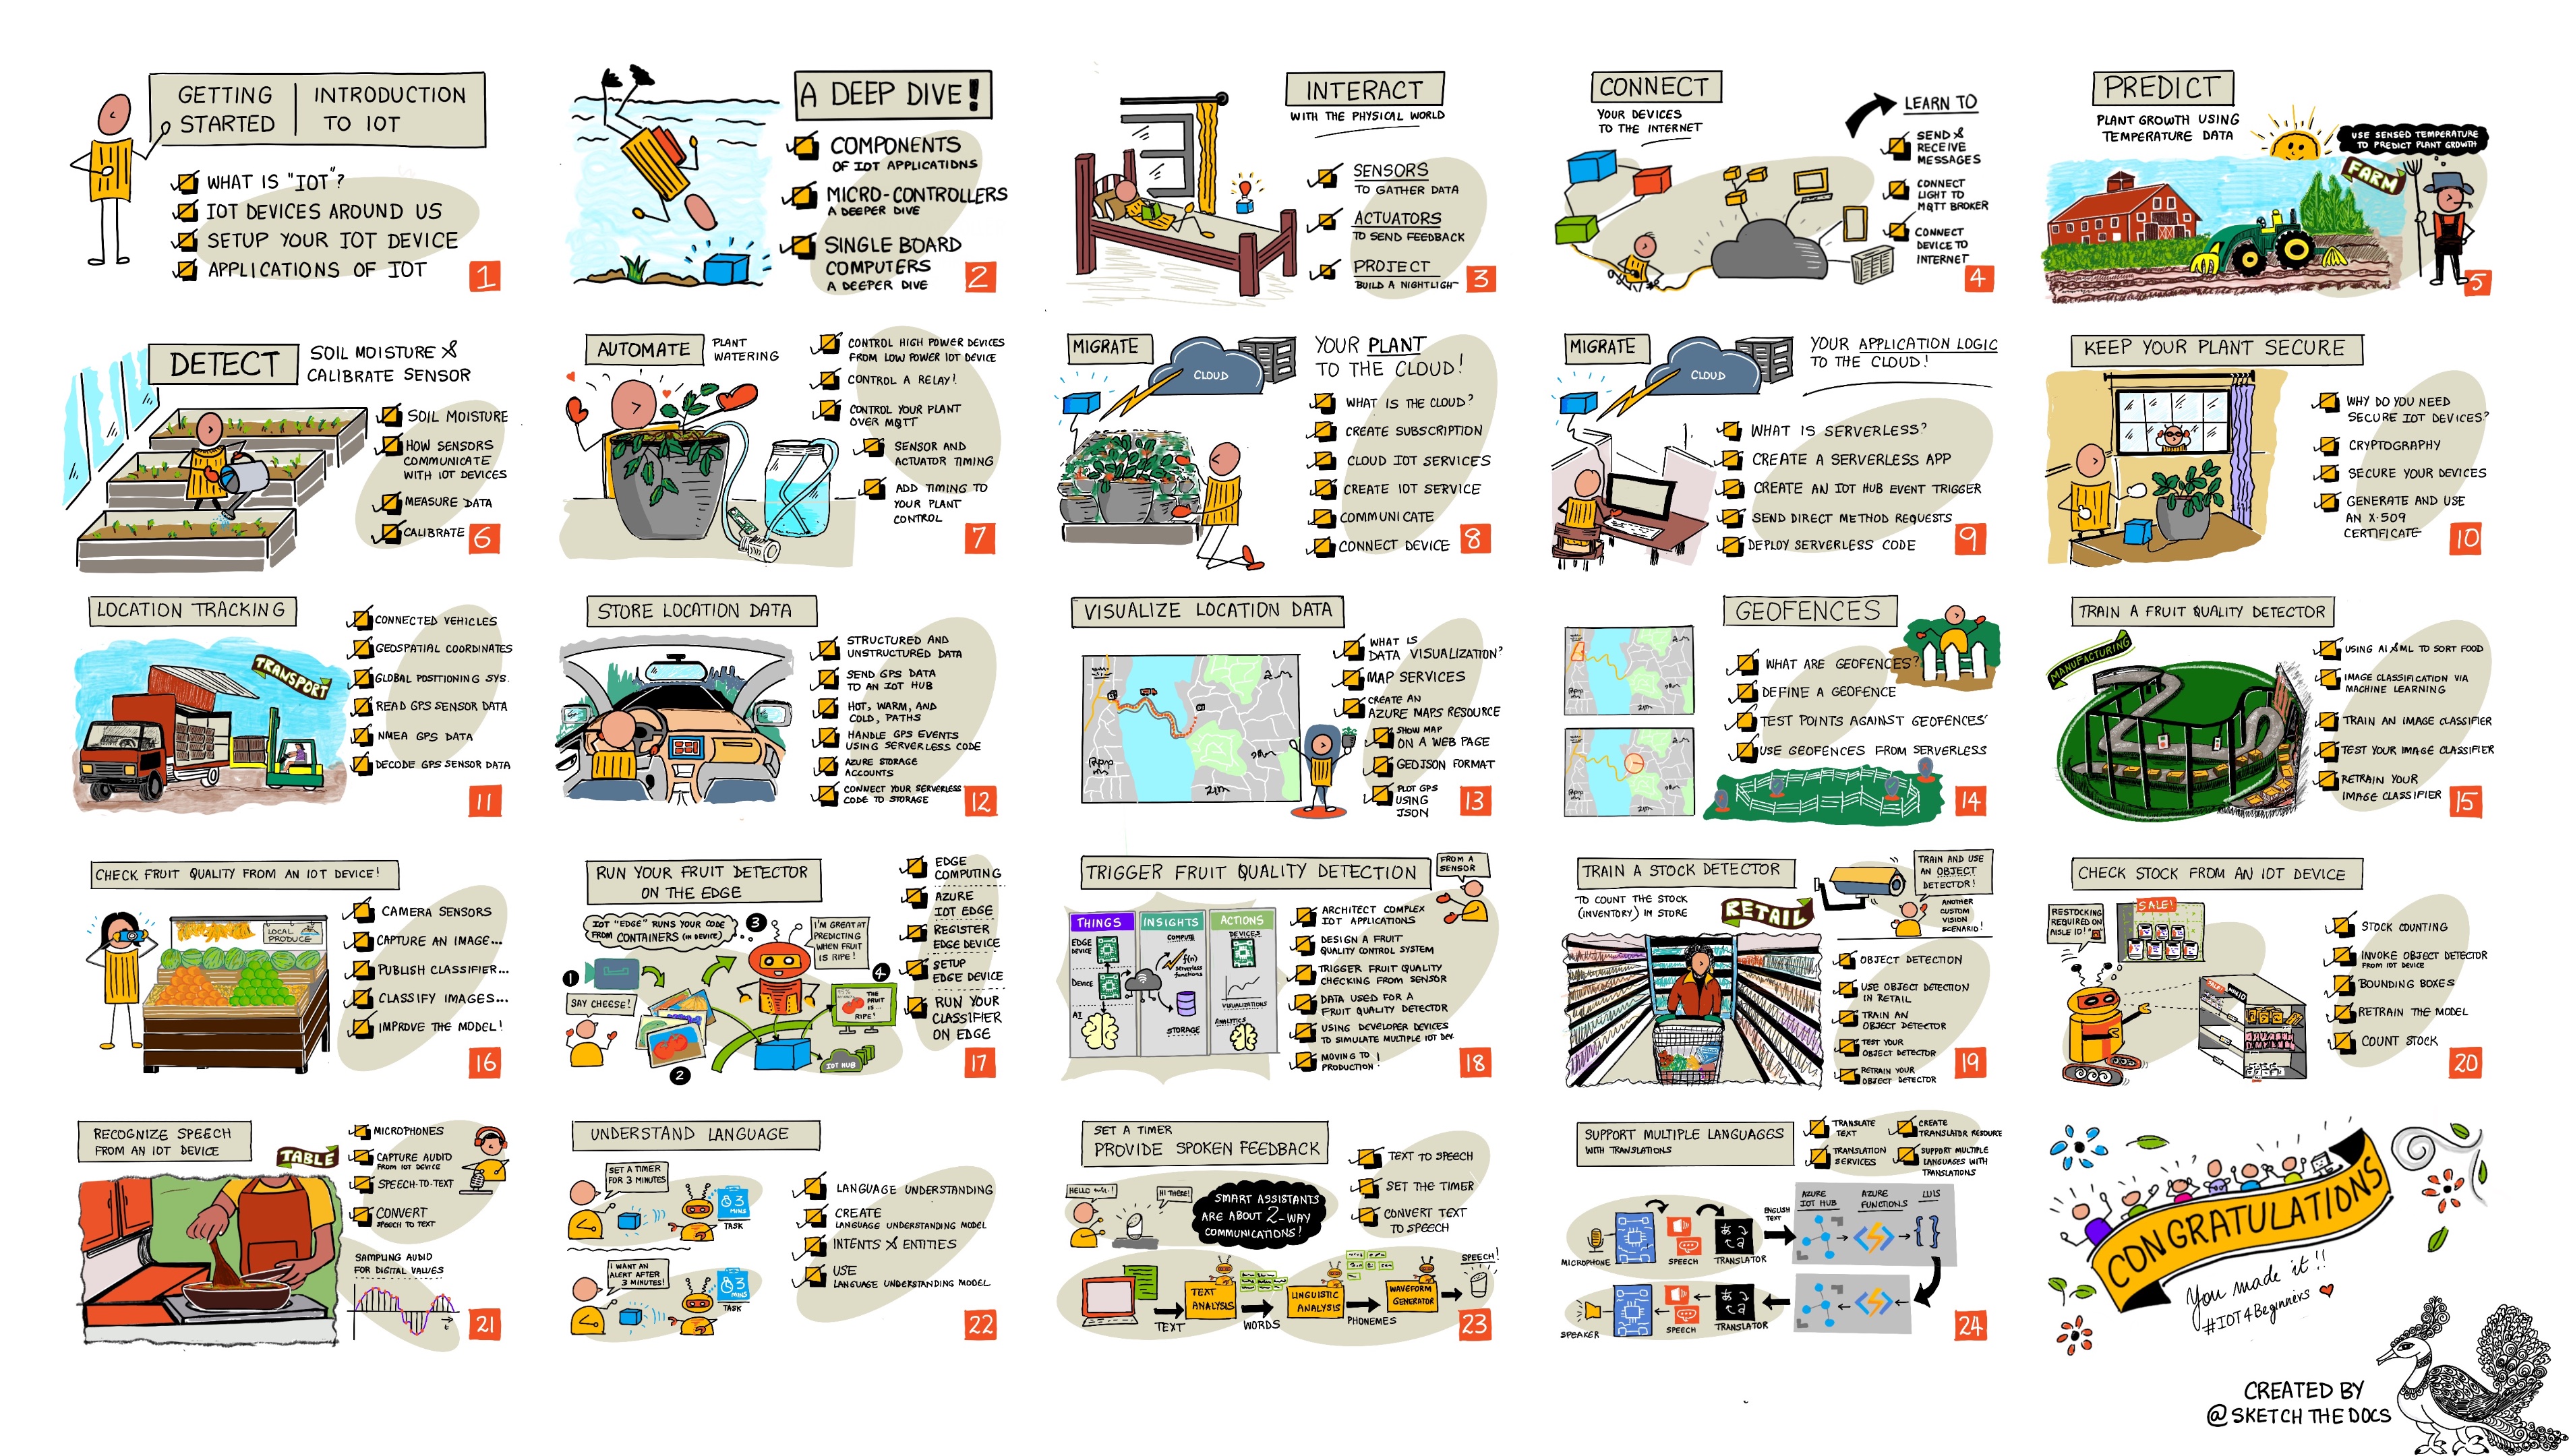 Girişi, çiftçiliği, taşımacılığı, işlemeyi, satışı ve pişirmeyi kapsayan 24 dersin yol haritası